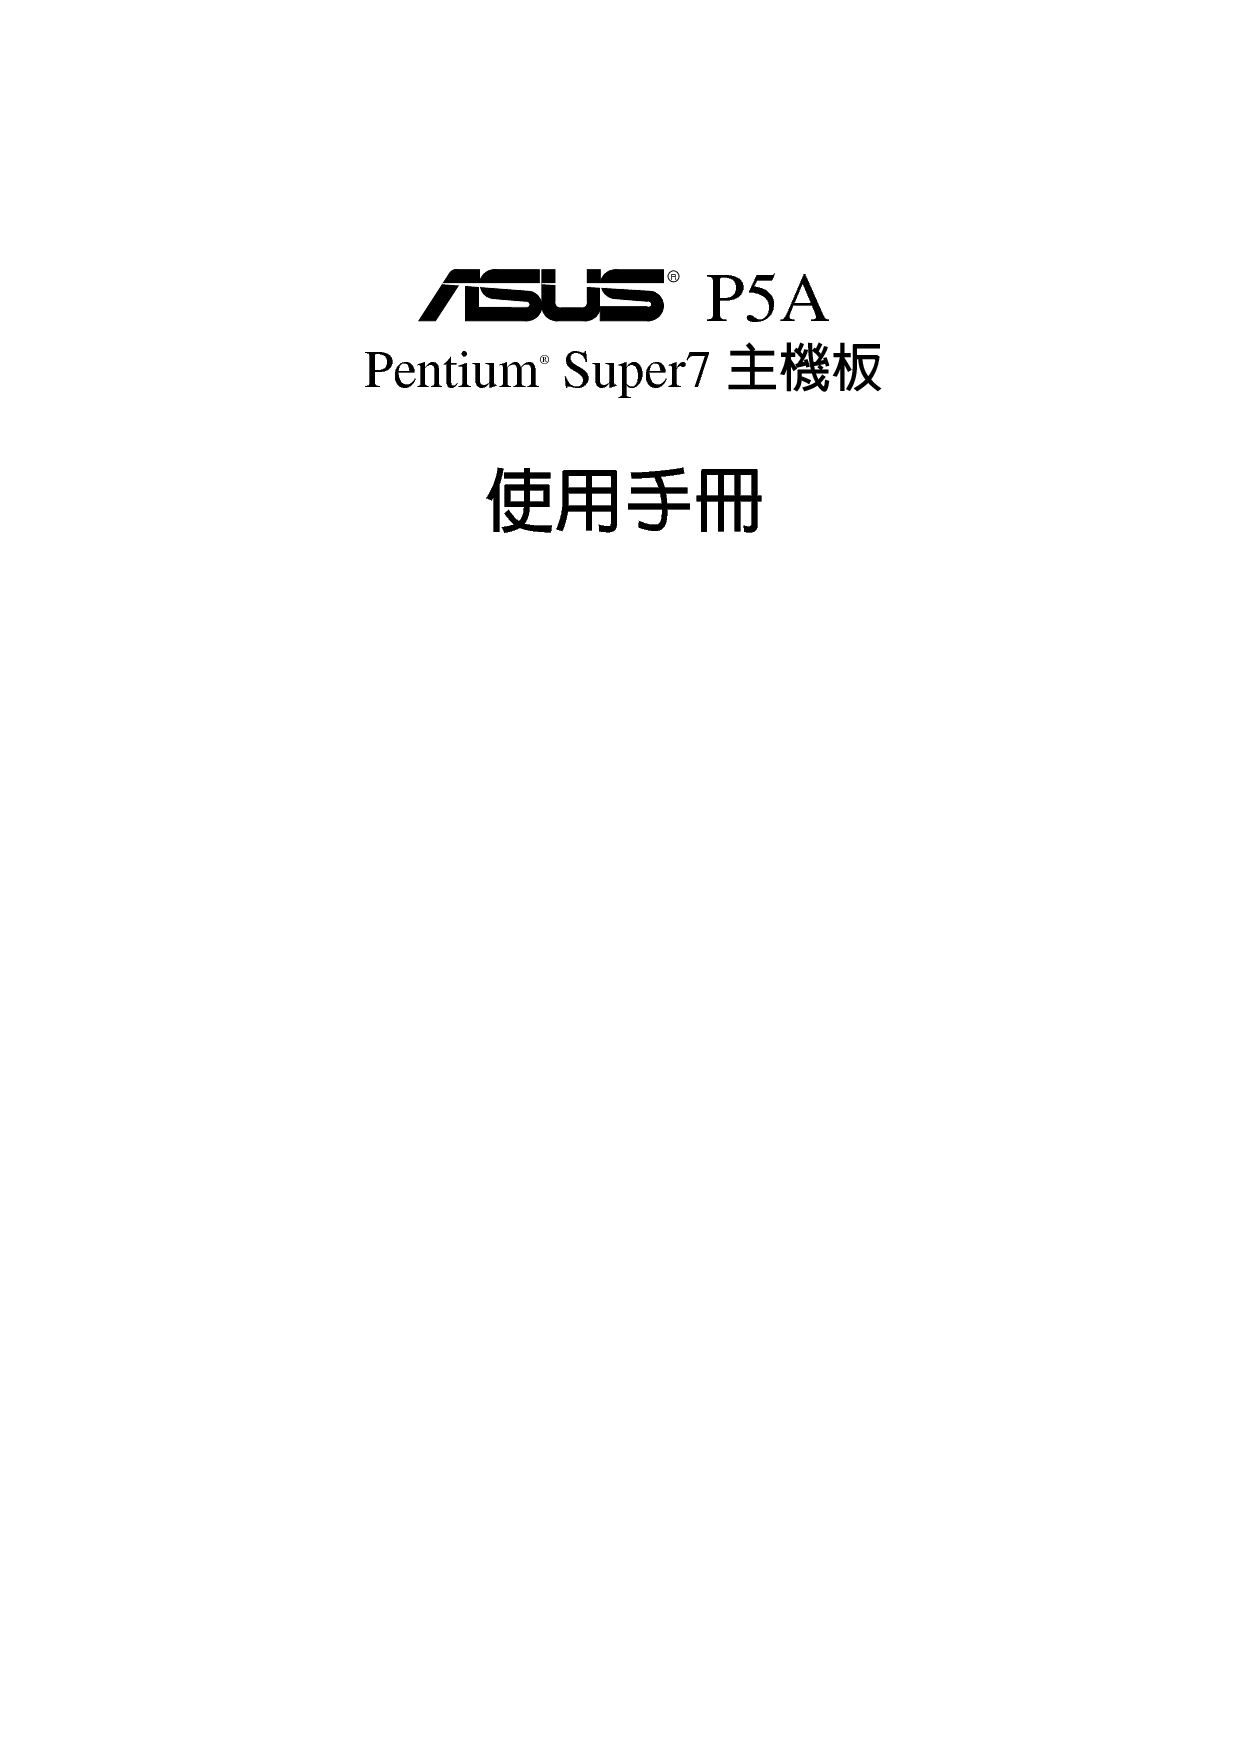 华硕 Asus P5A Pentium Super7 用户手册 封面